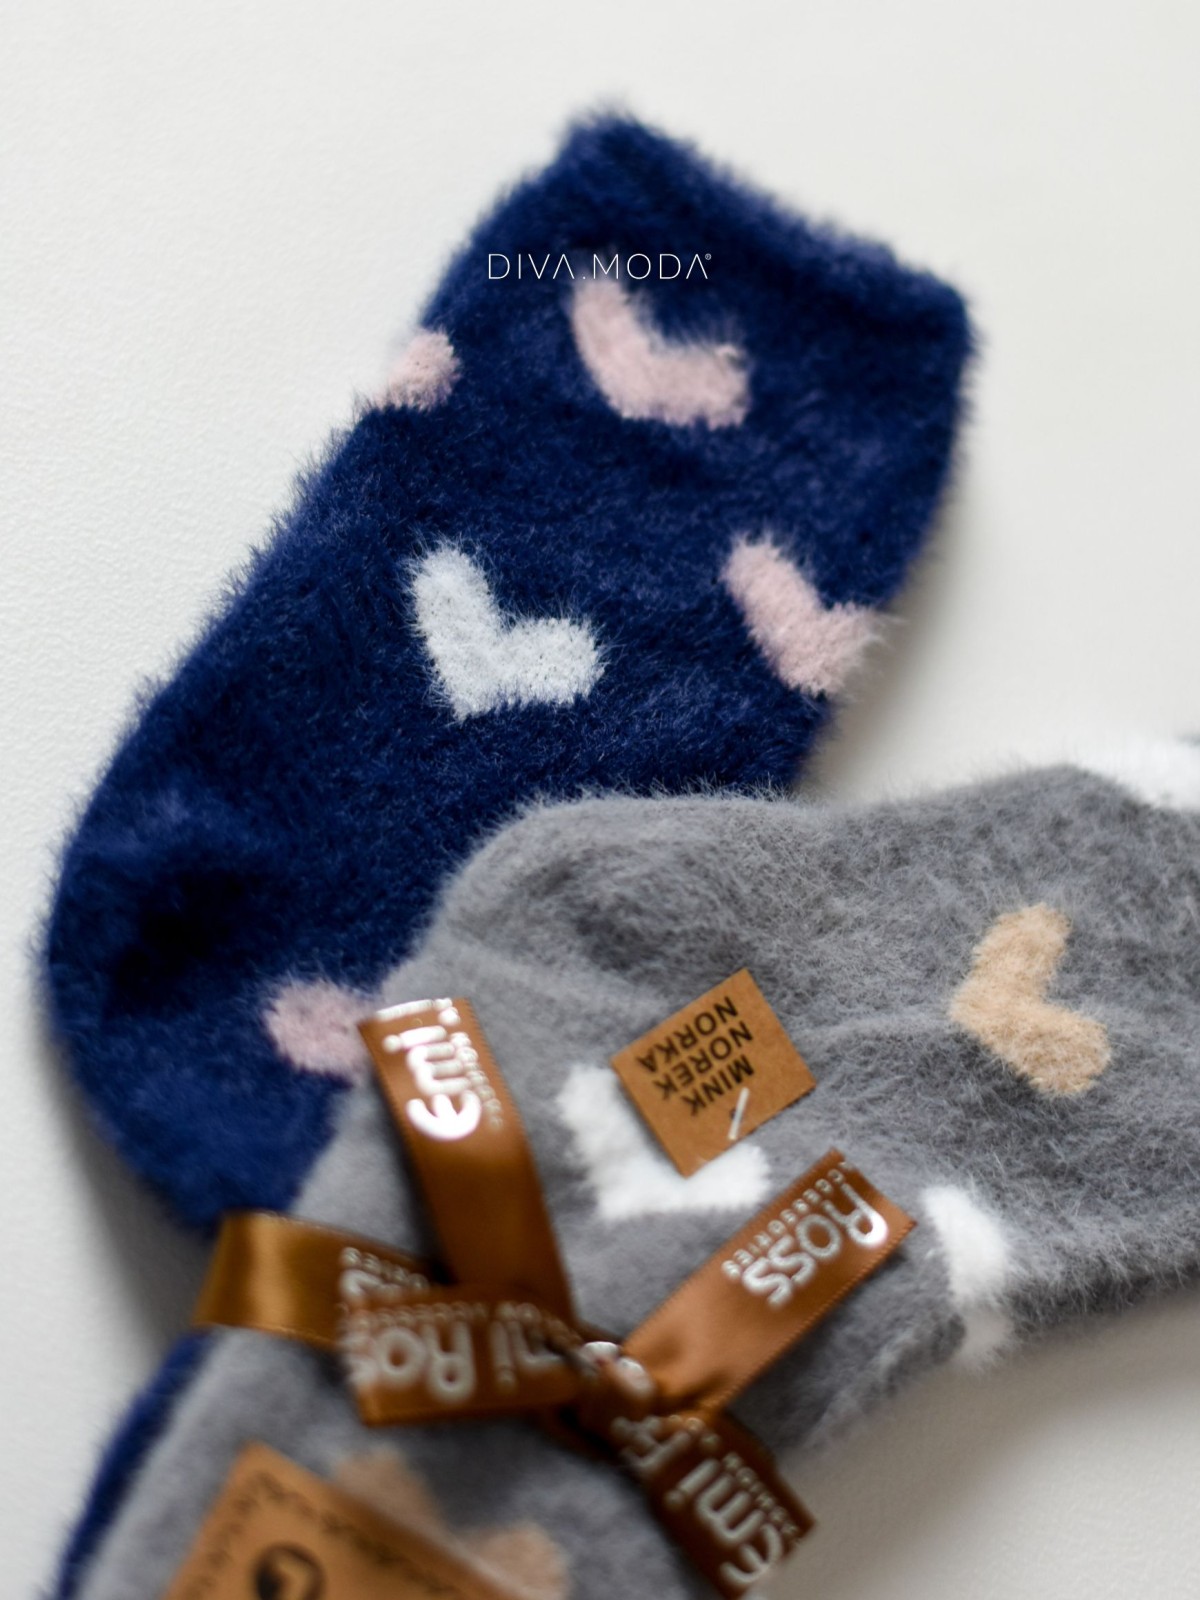 Duo jemně chlupatých srdíčkových ponožek tmavě modré-šedé M 17